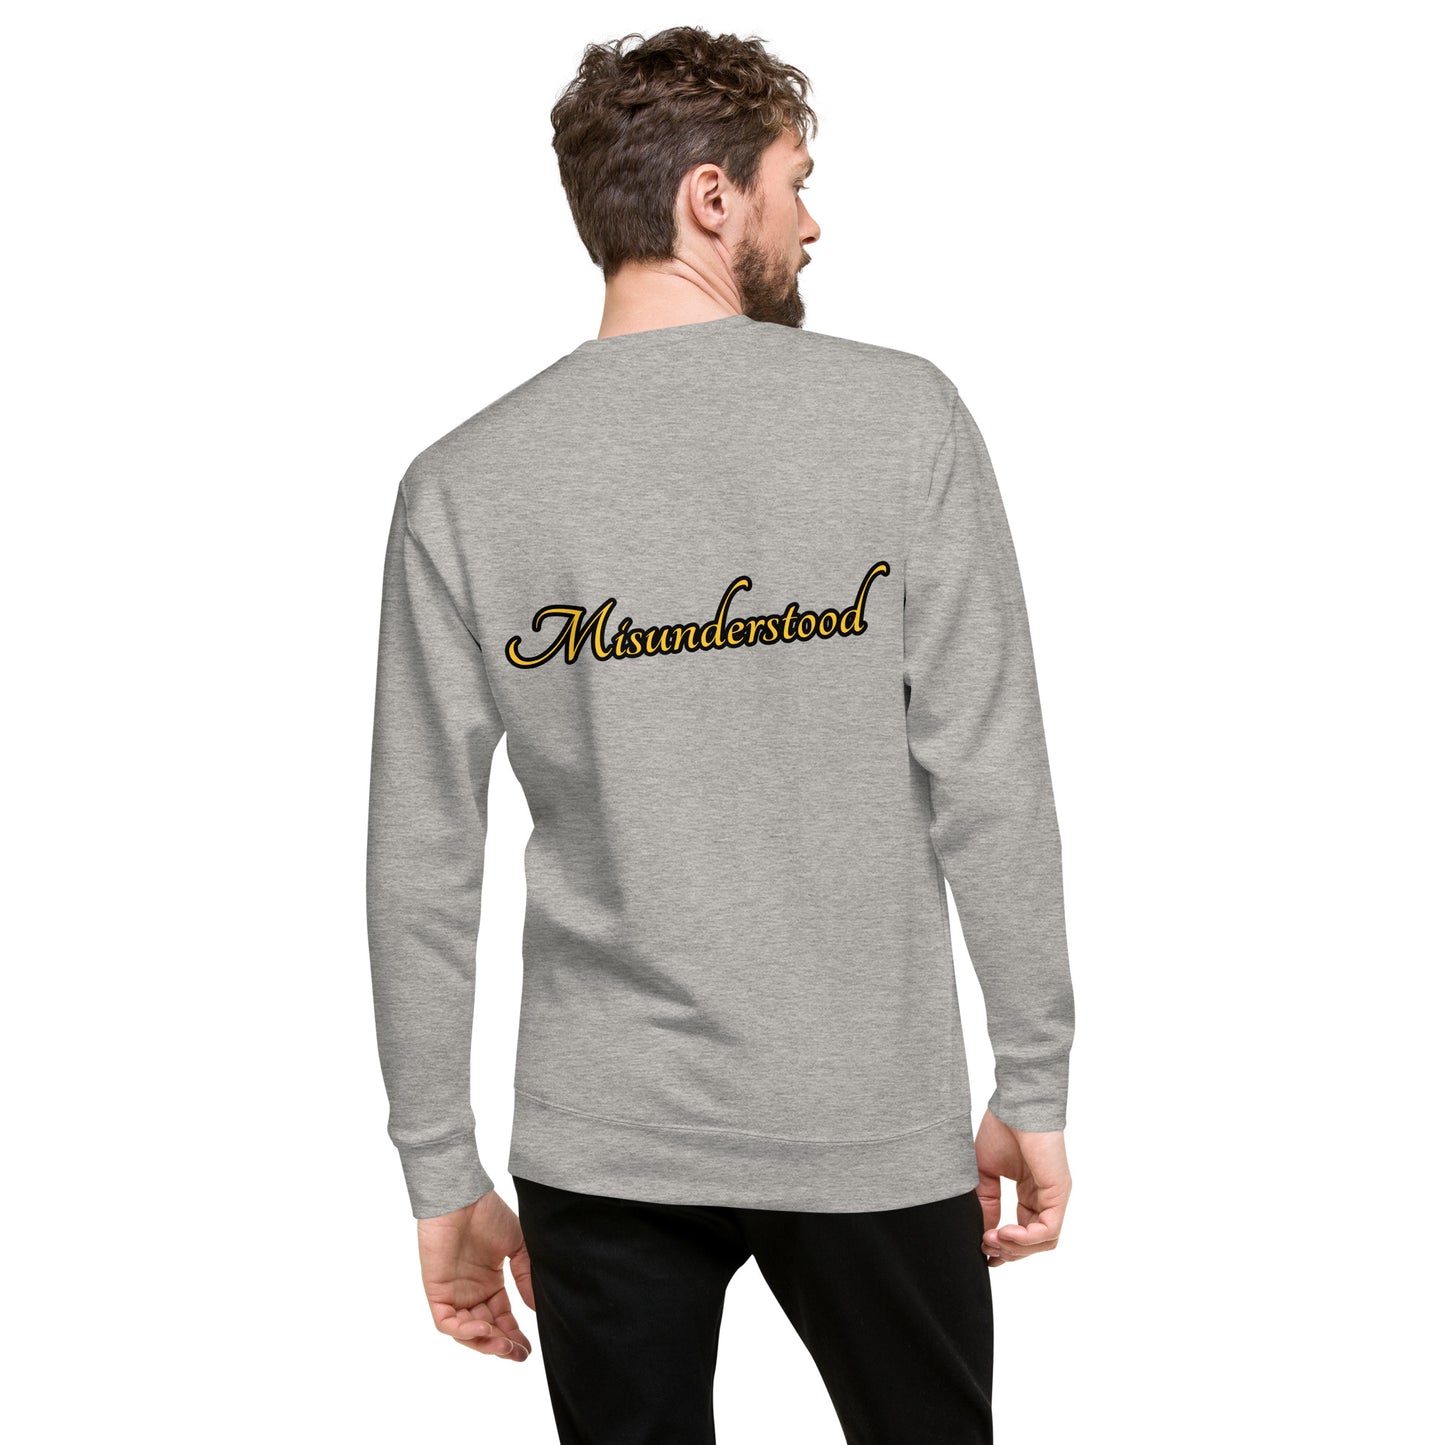 Misunderstood Unisex Premium Sweatshirt - Carbon Grey - Weirdly Sensational